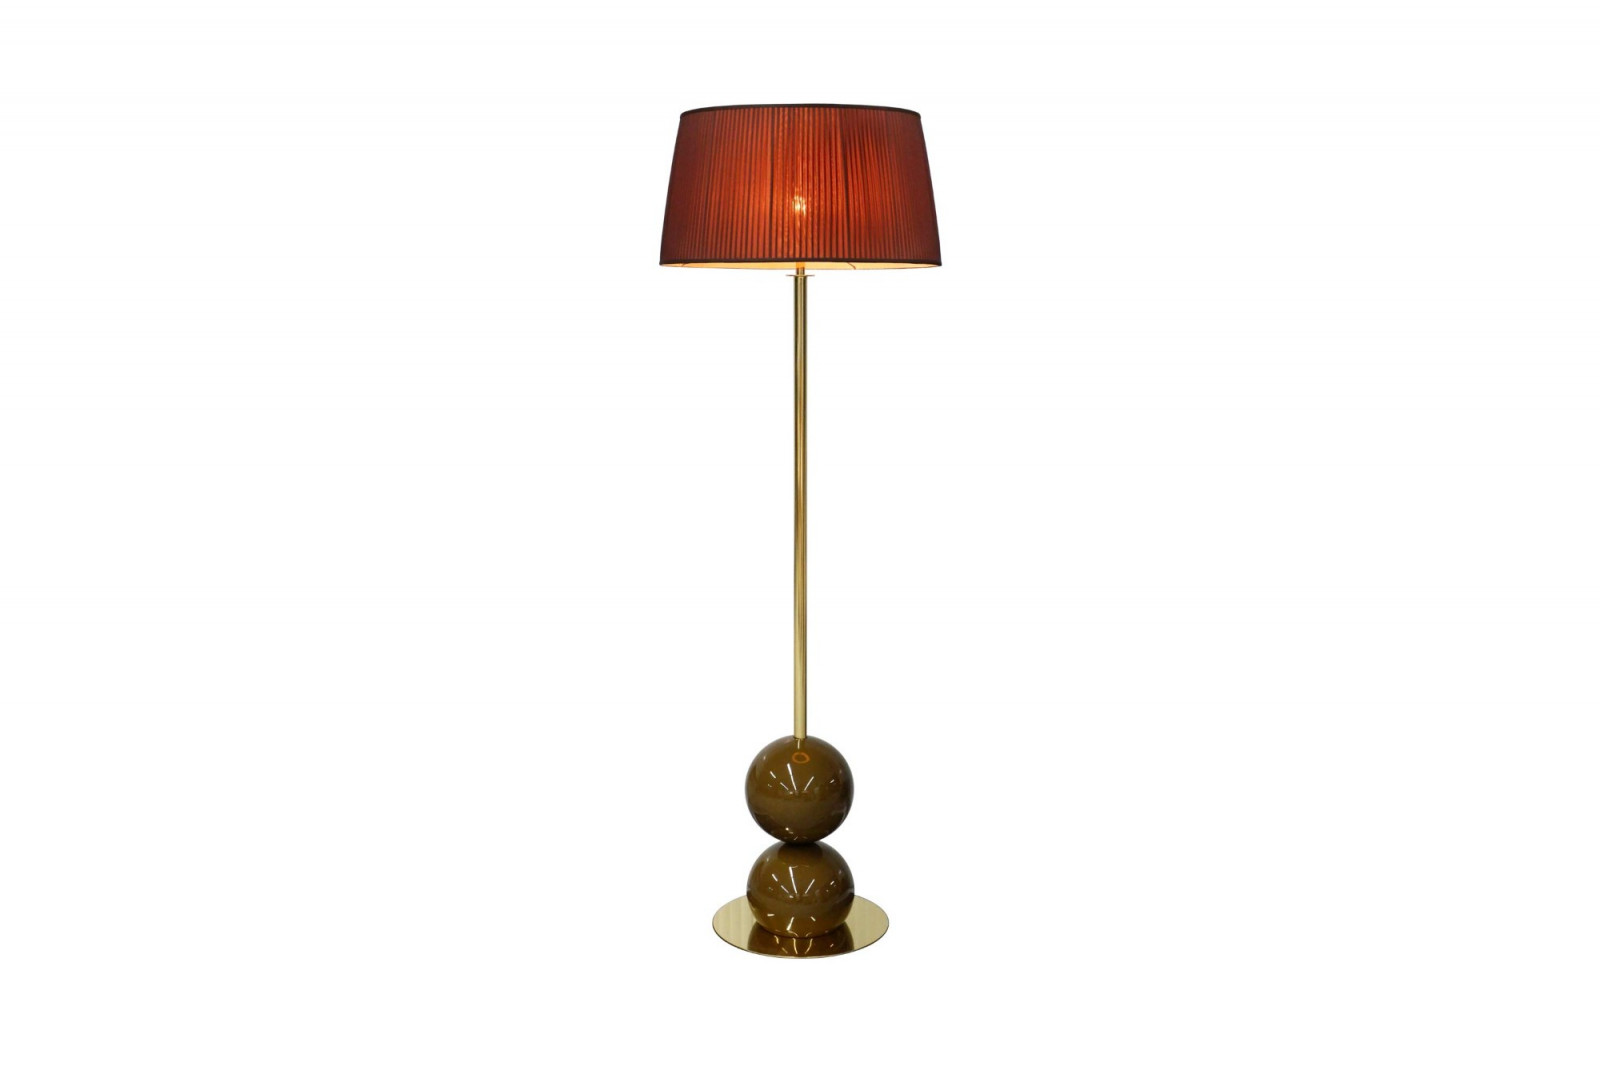 floor-lamp-elegant-modern-luxurious-brass-brown-museu-gansk-1-1650-1600-1400-100